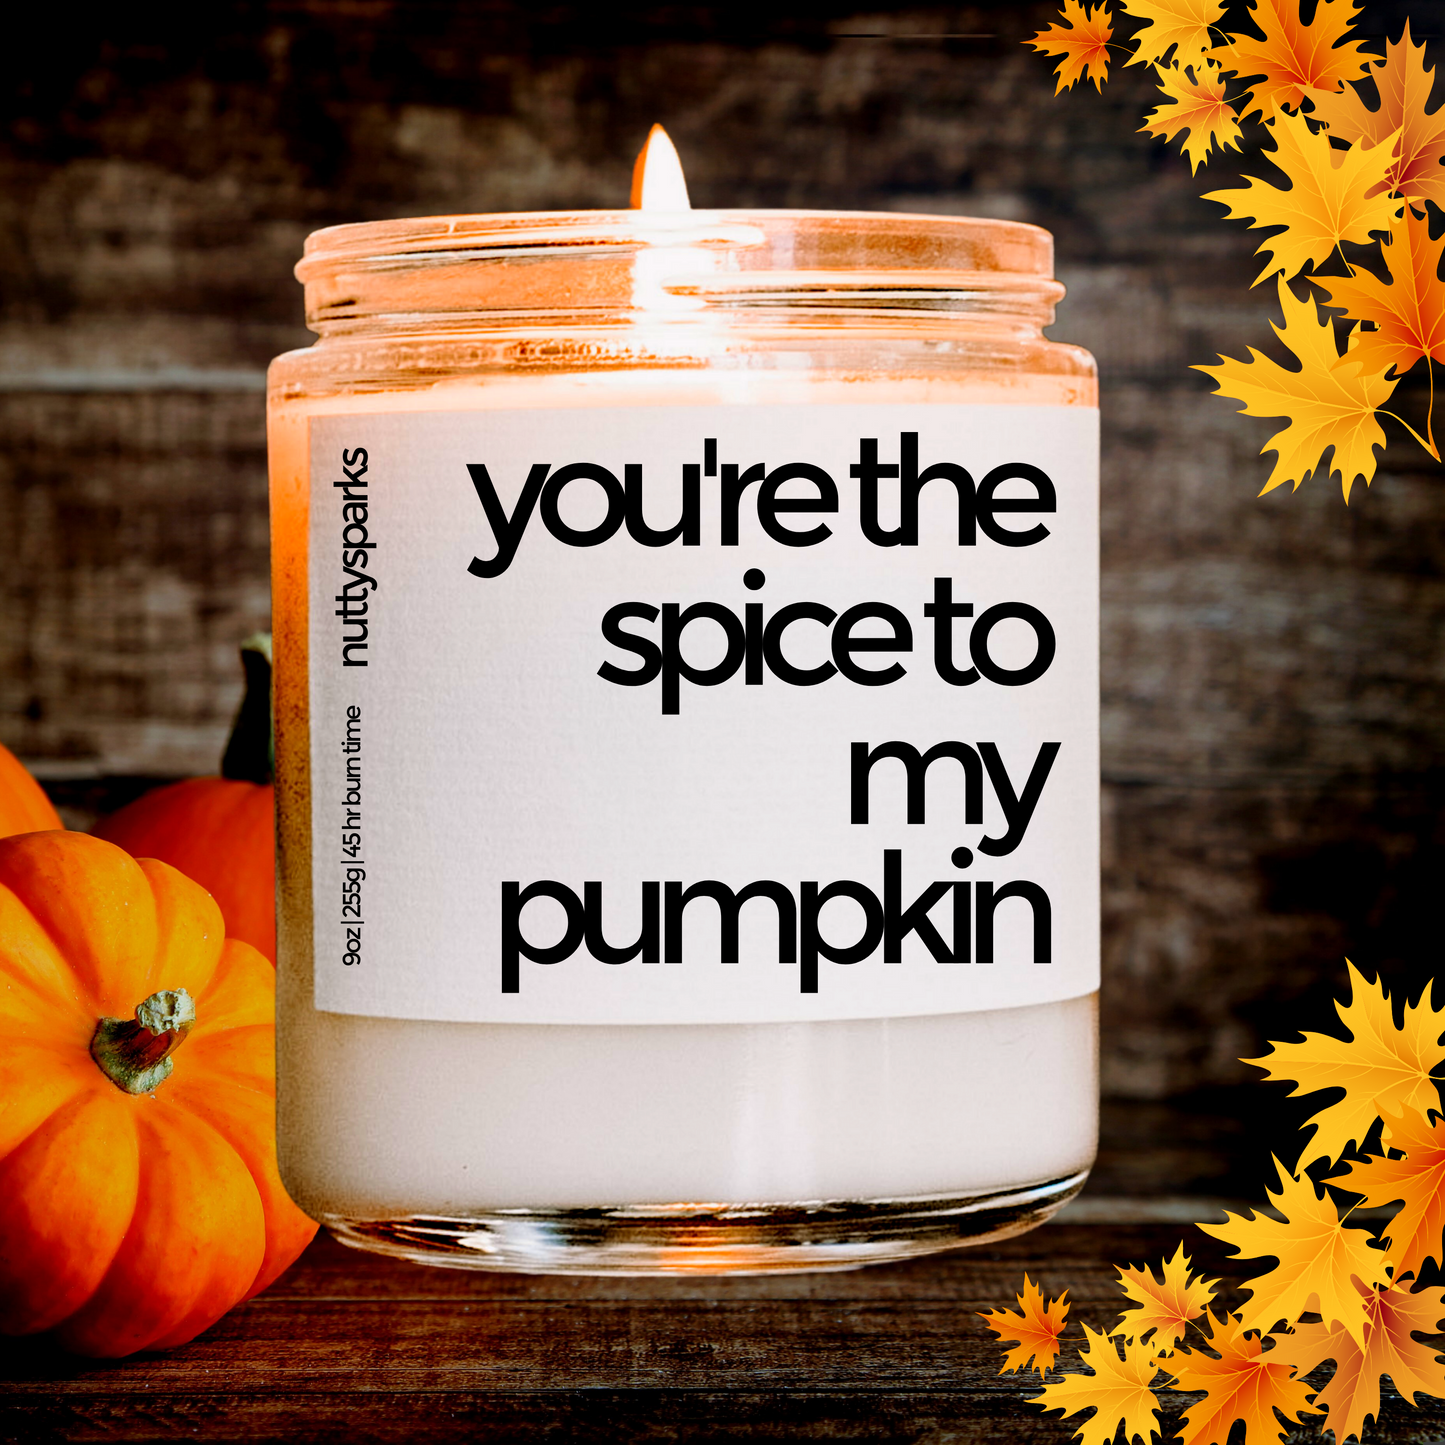 spice to my pumpkin